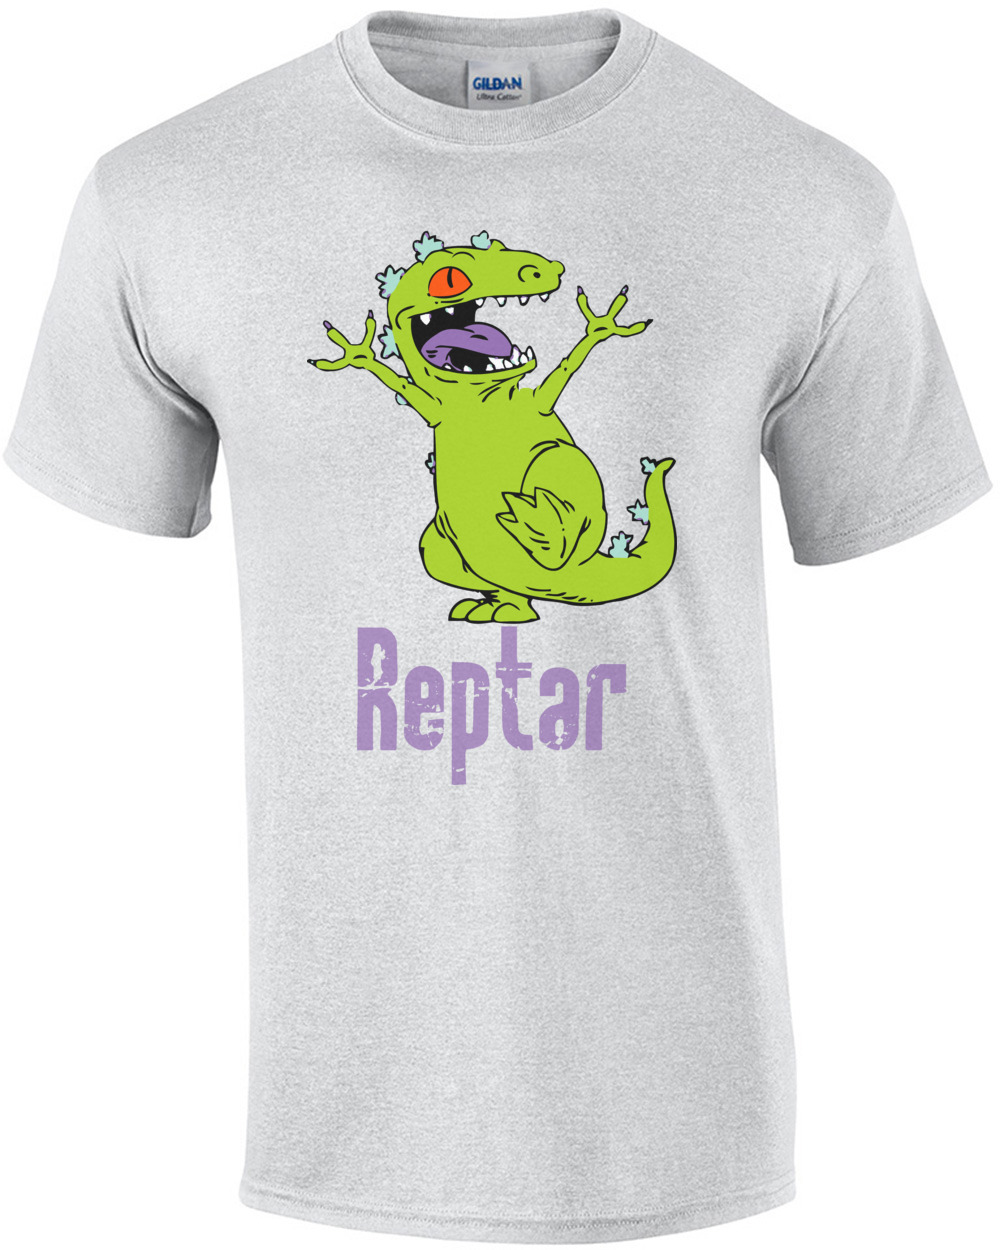 Reptar Rugrats T Shirt